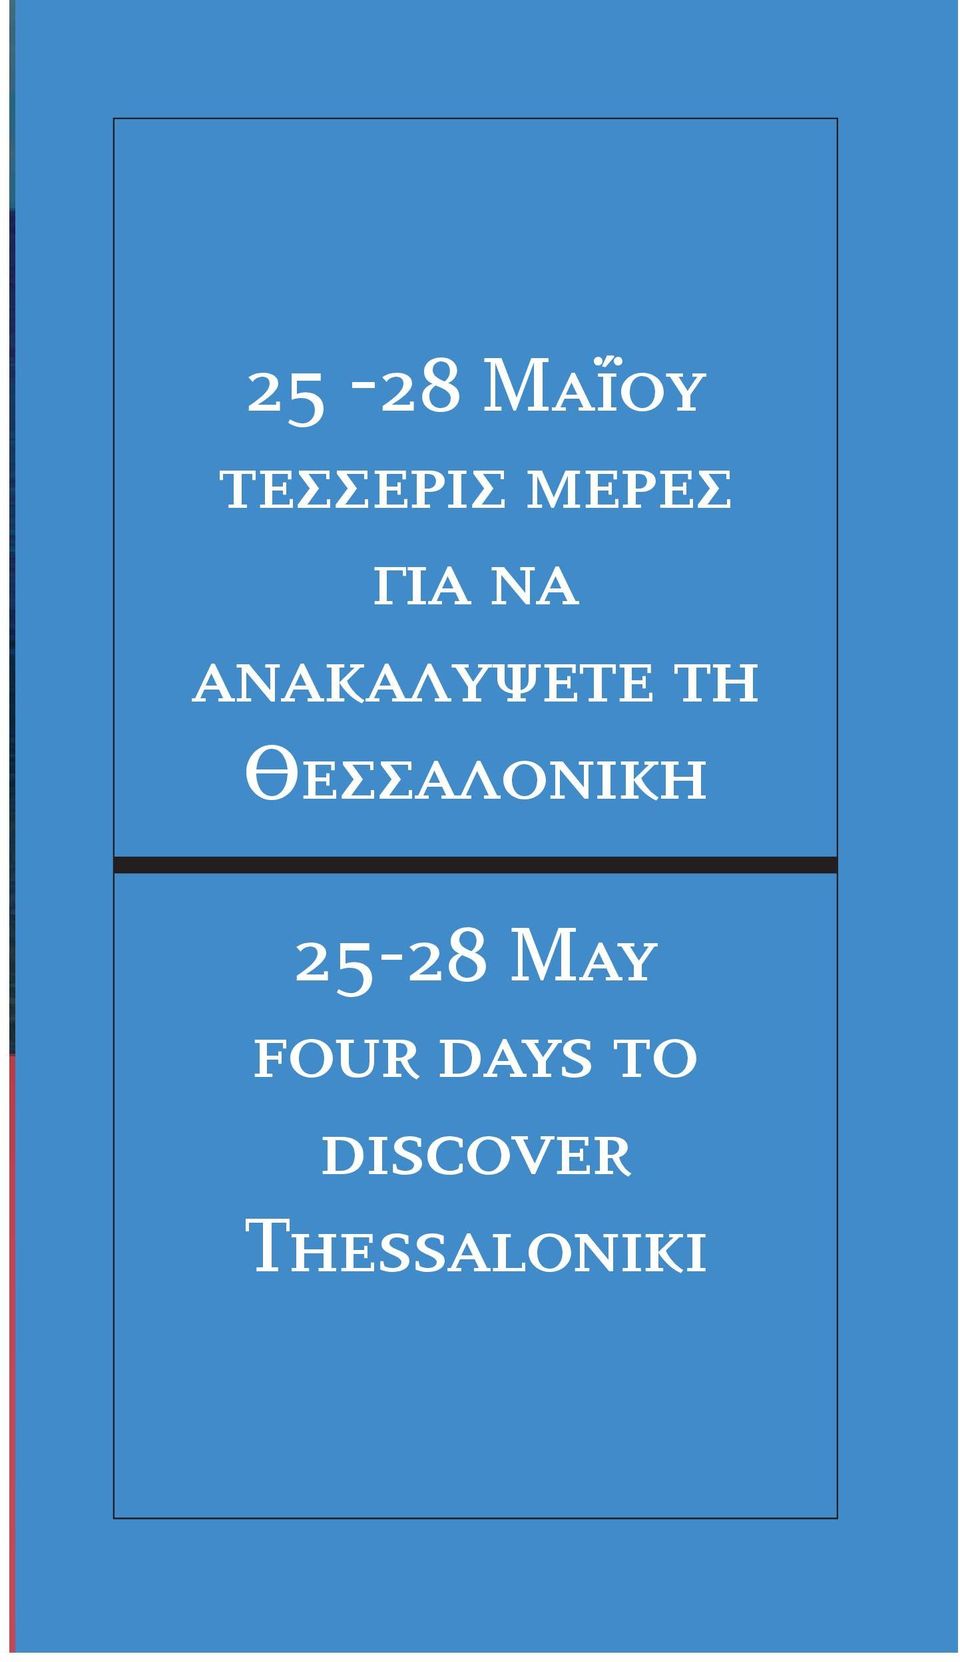 Θεσσαλονiκη 25-28 May four